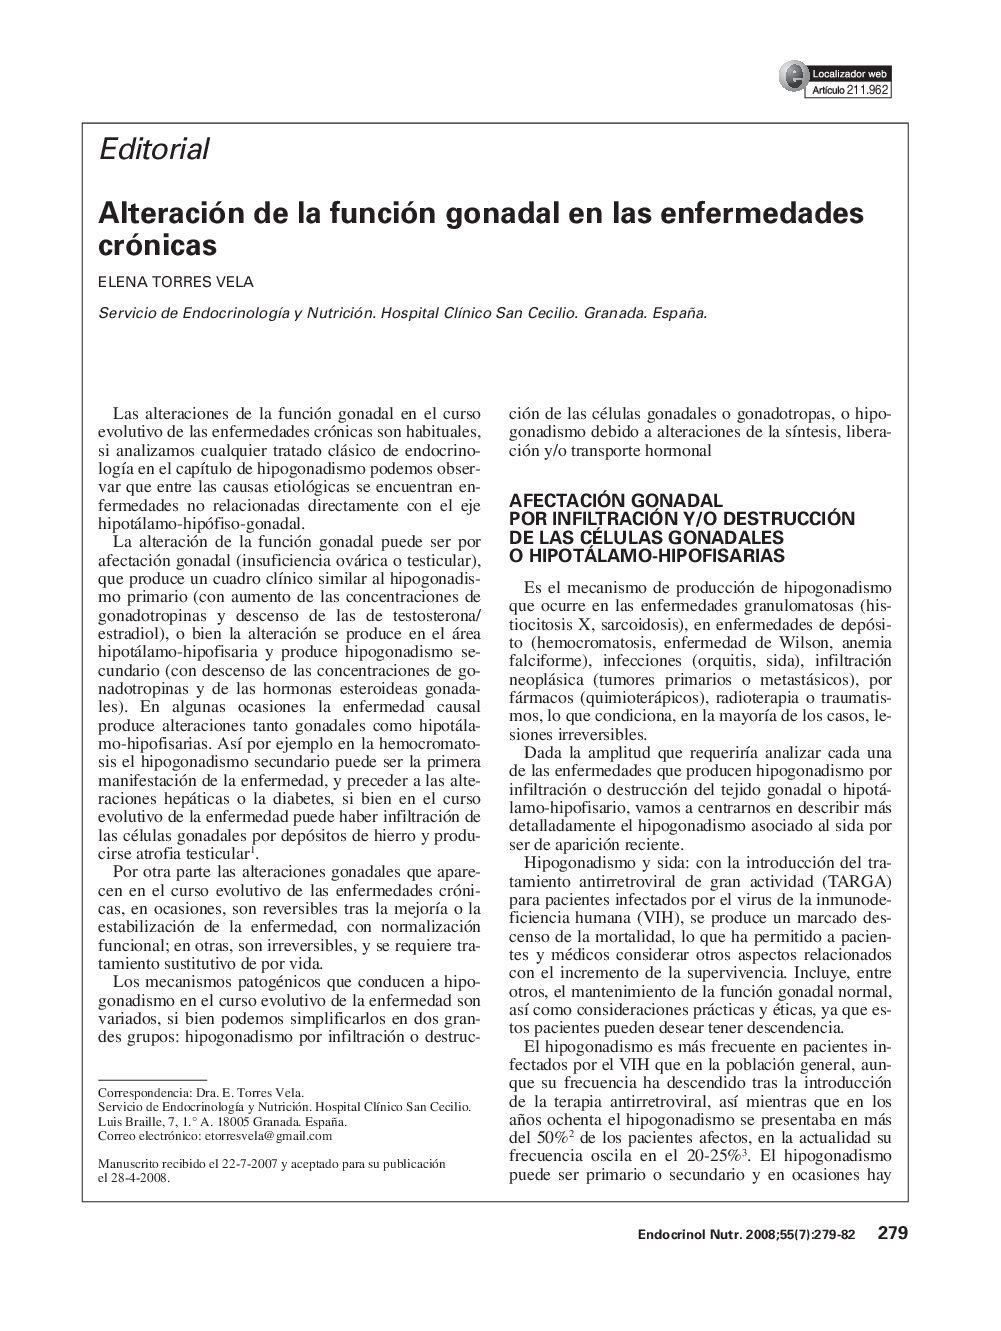 Alteración de la función gonadal en las enfermedades crónicas